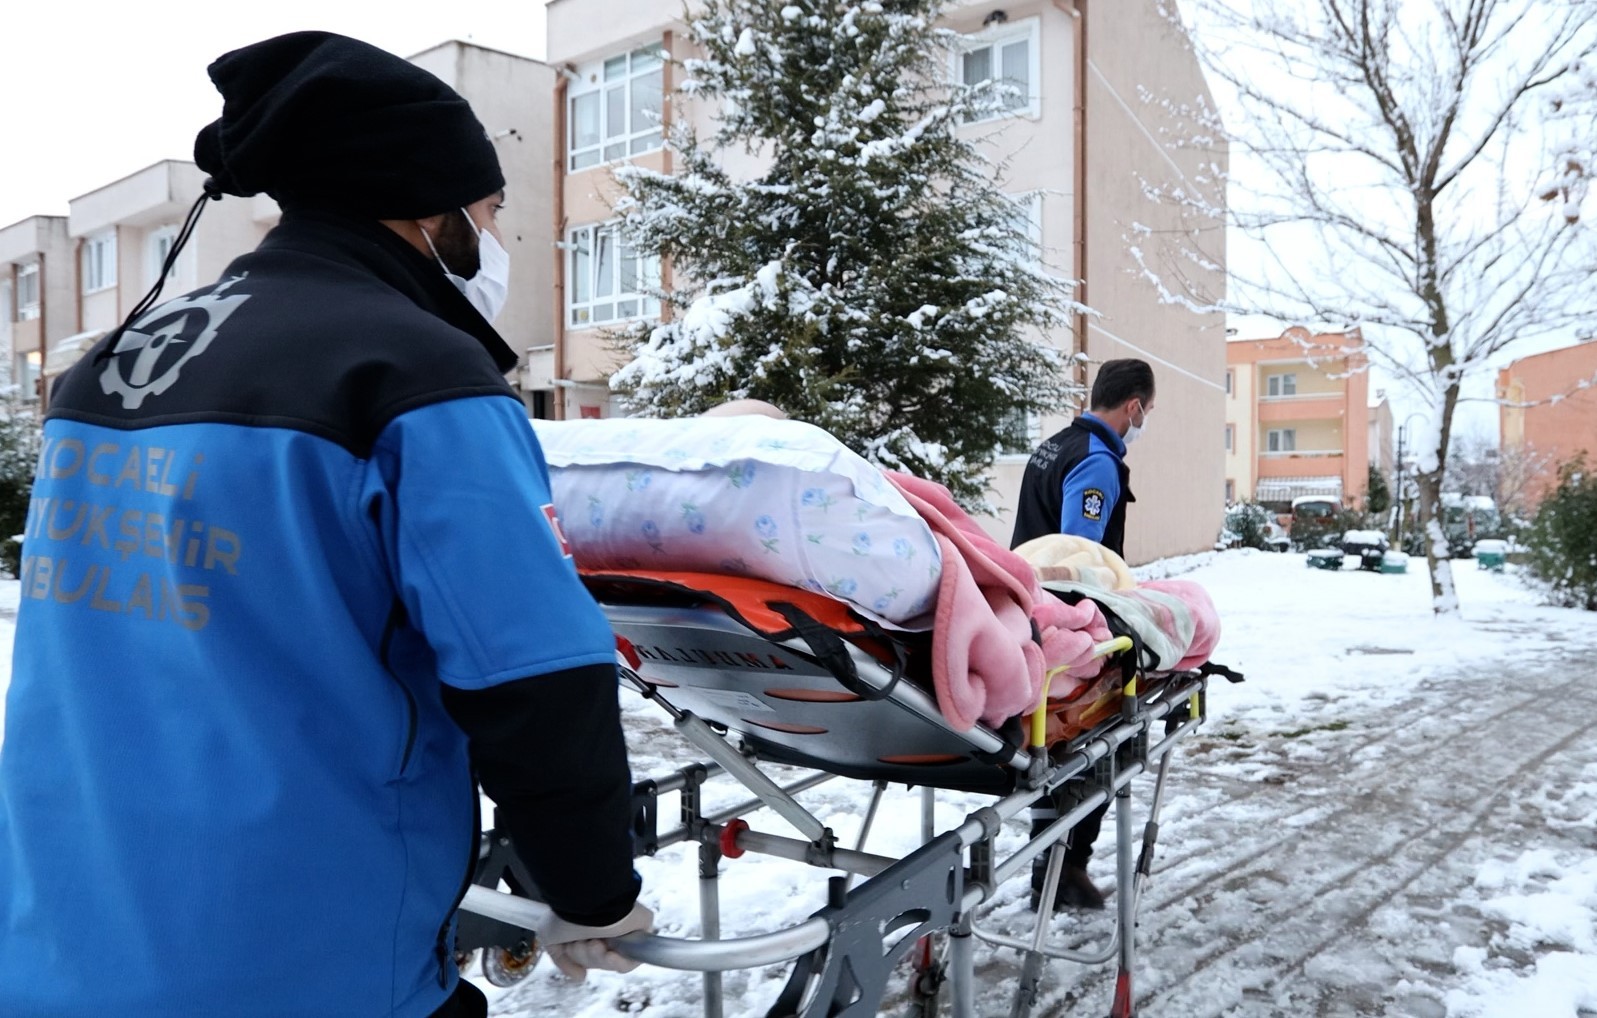 Hasta nakil ambulansları kar kış dinlemiyor #kocaeli